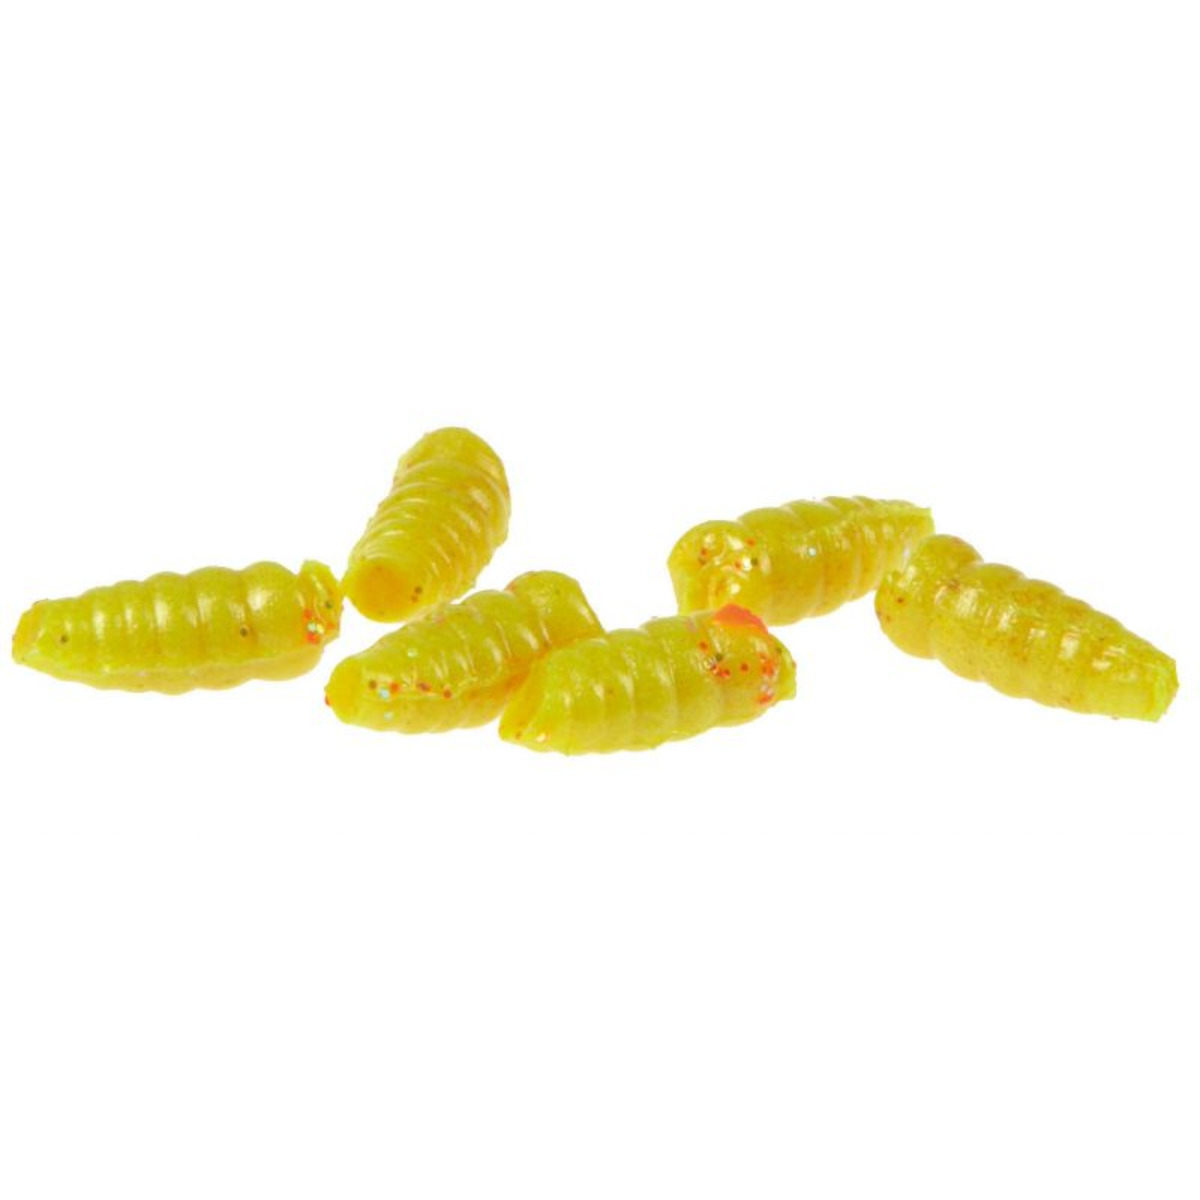 Berkley Powerbait Micro Power Maggots - Yellow